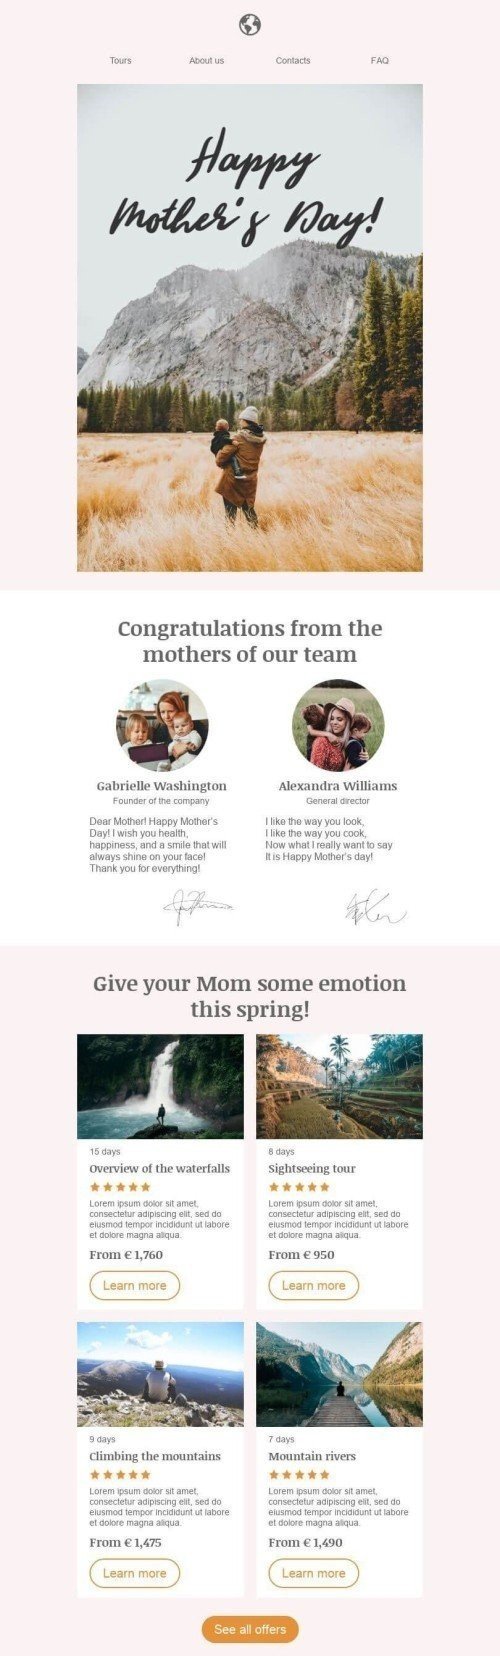 Шаблон письма к празднику День матери «Поздравления от мам» для индустрии «Туризм» дектопный вид